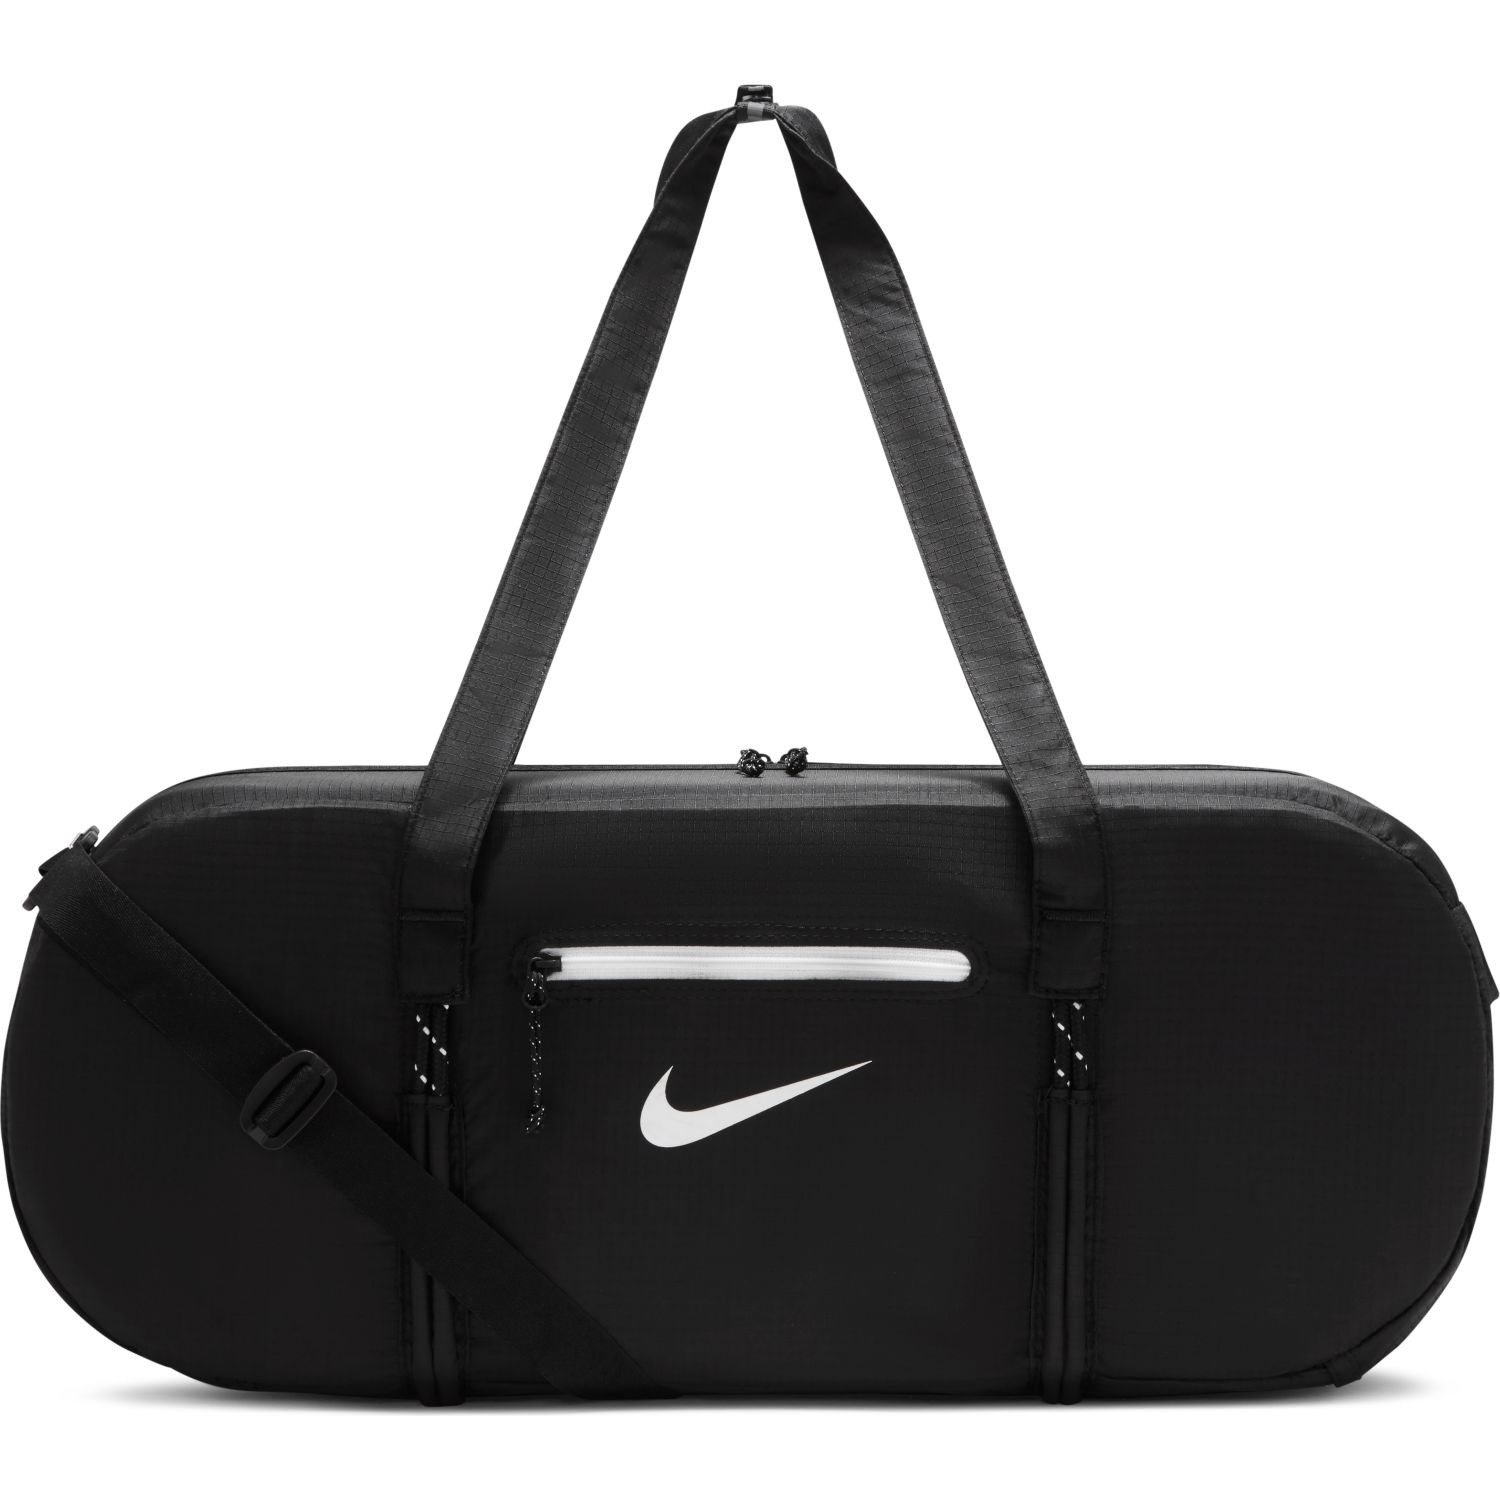 Nike Stash Training Duffel Bag - Triple Black/White | Sportitude